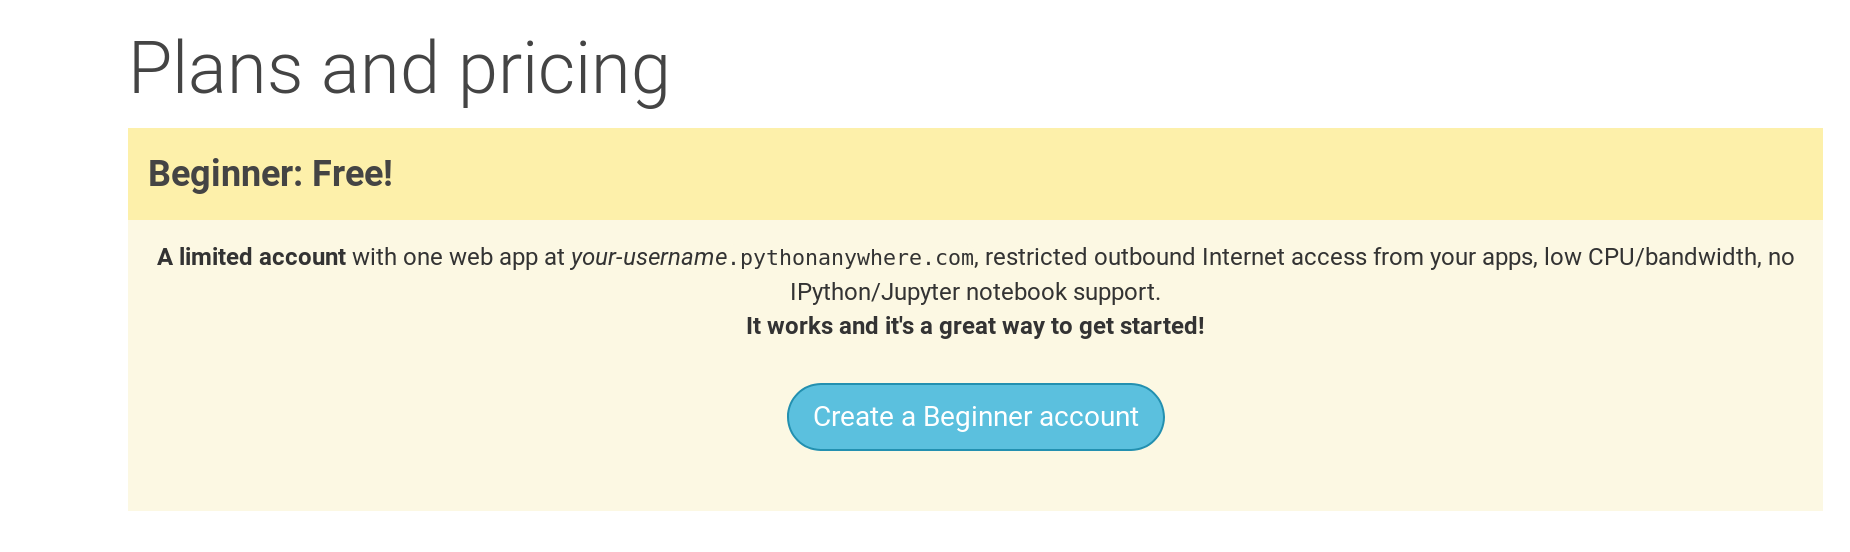 PythonAnywhereの登録ページ。無料の「Beginner」アカウントを作るためのボタンがあります。